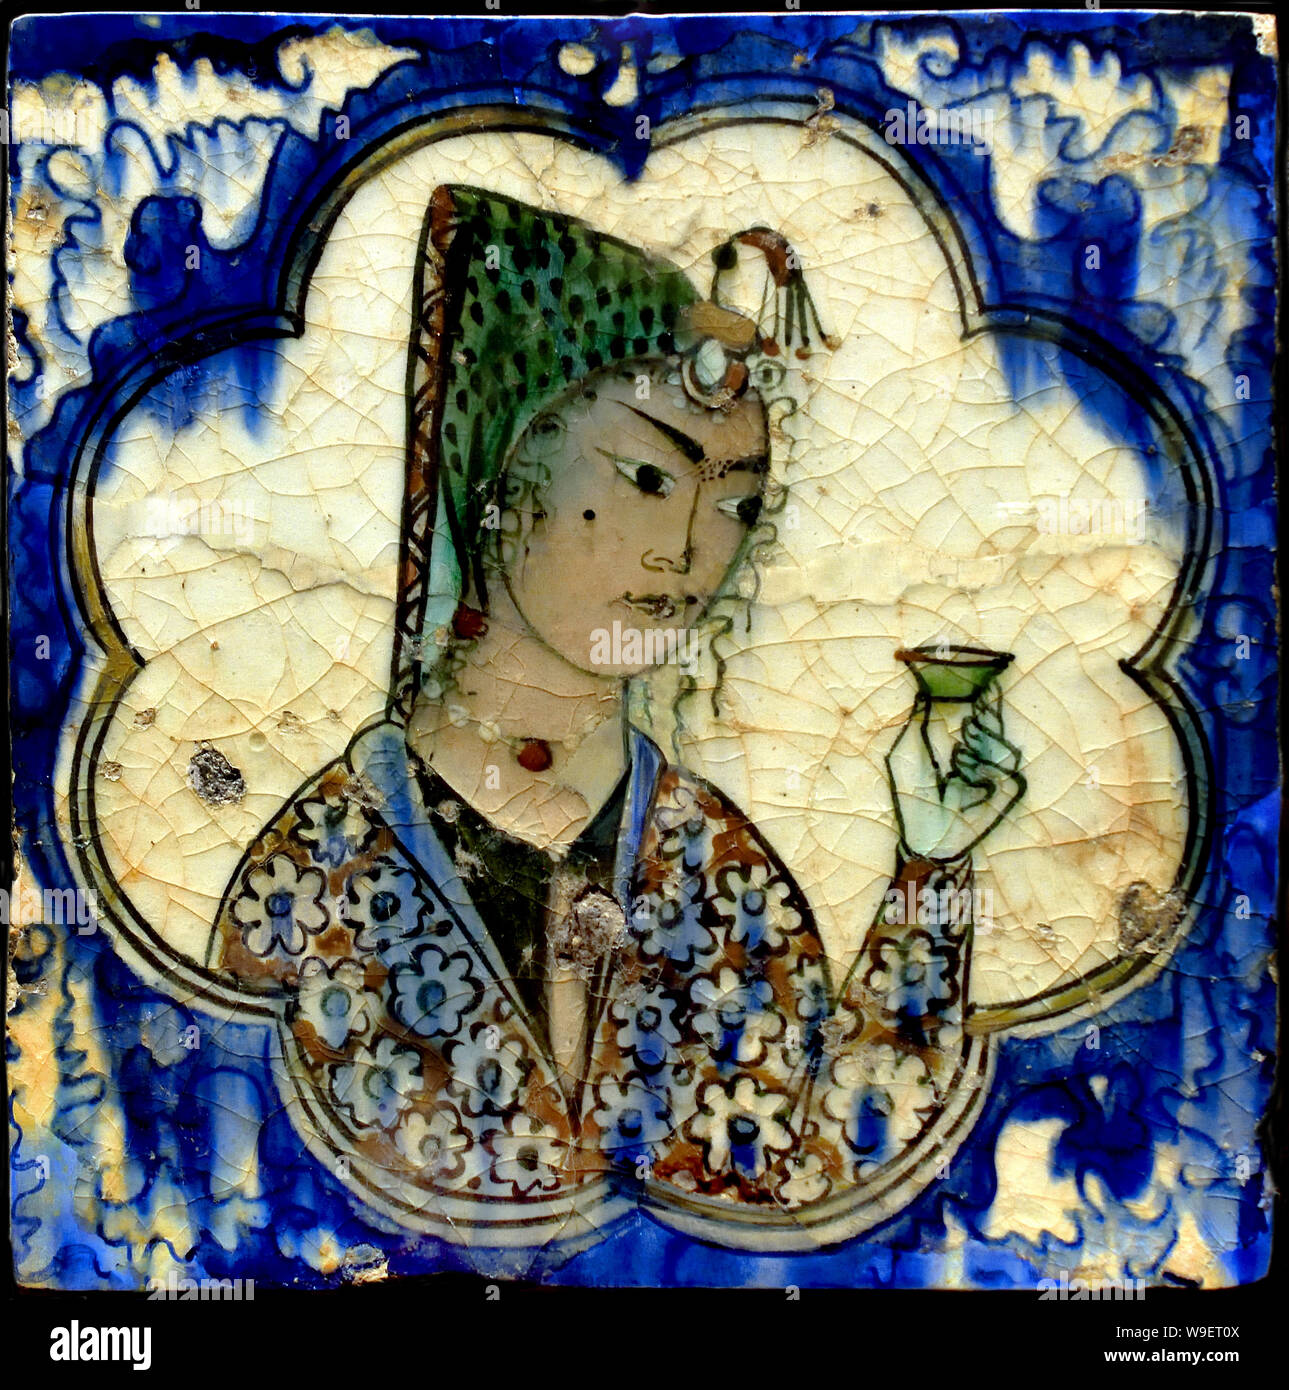 Fliese mit Abbildung 1590-1630 Ispahan Iran iranische islamische Kunst (isfahan von 1050 bis 1722 blühte, besonders im 16. und 17. Jahrhundert unter der Safavid Dynastie, als es das Kapital von Persien zum zweiten Mal in seiner Geschichte wurde unter Schah Abbas dem Großen. ) Stockfoto